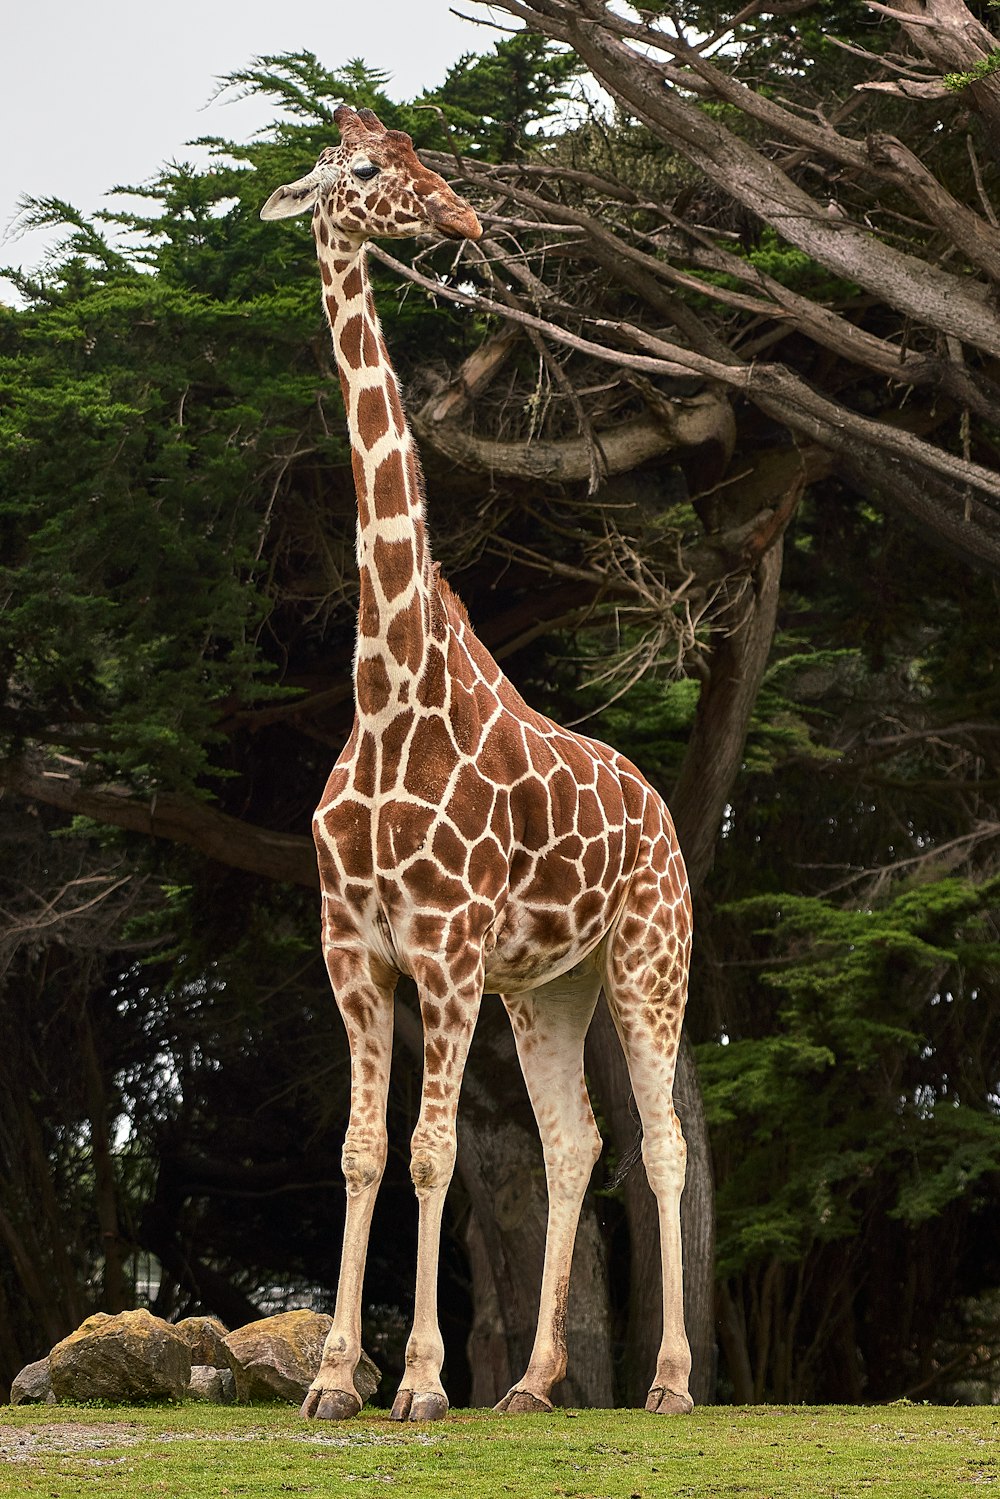 giraffe standing near tree at daytime